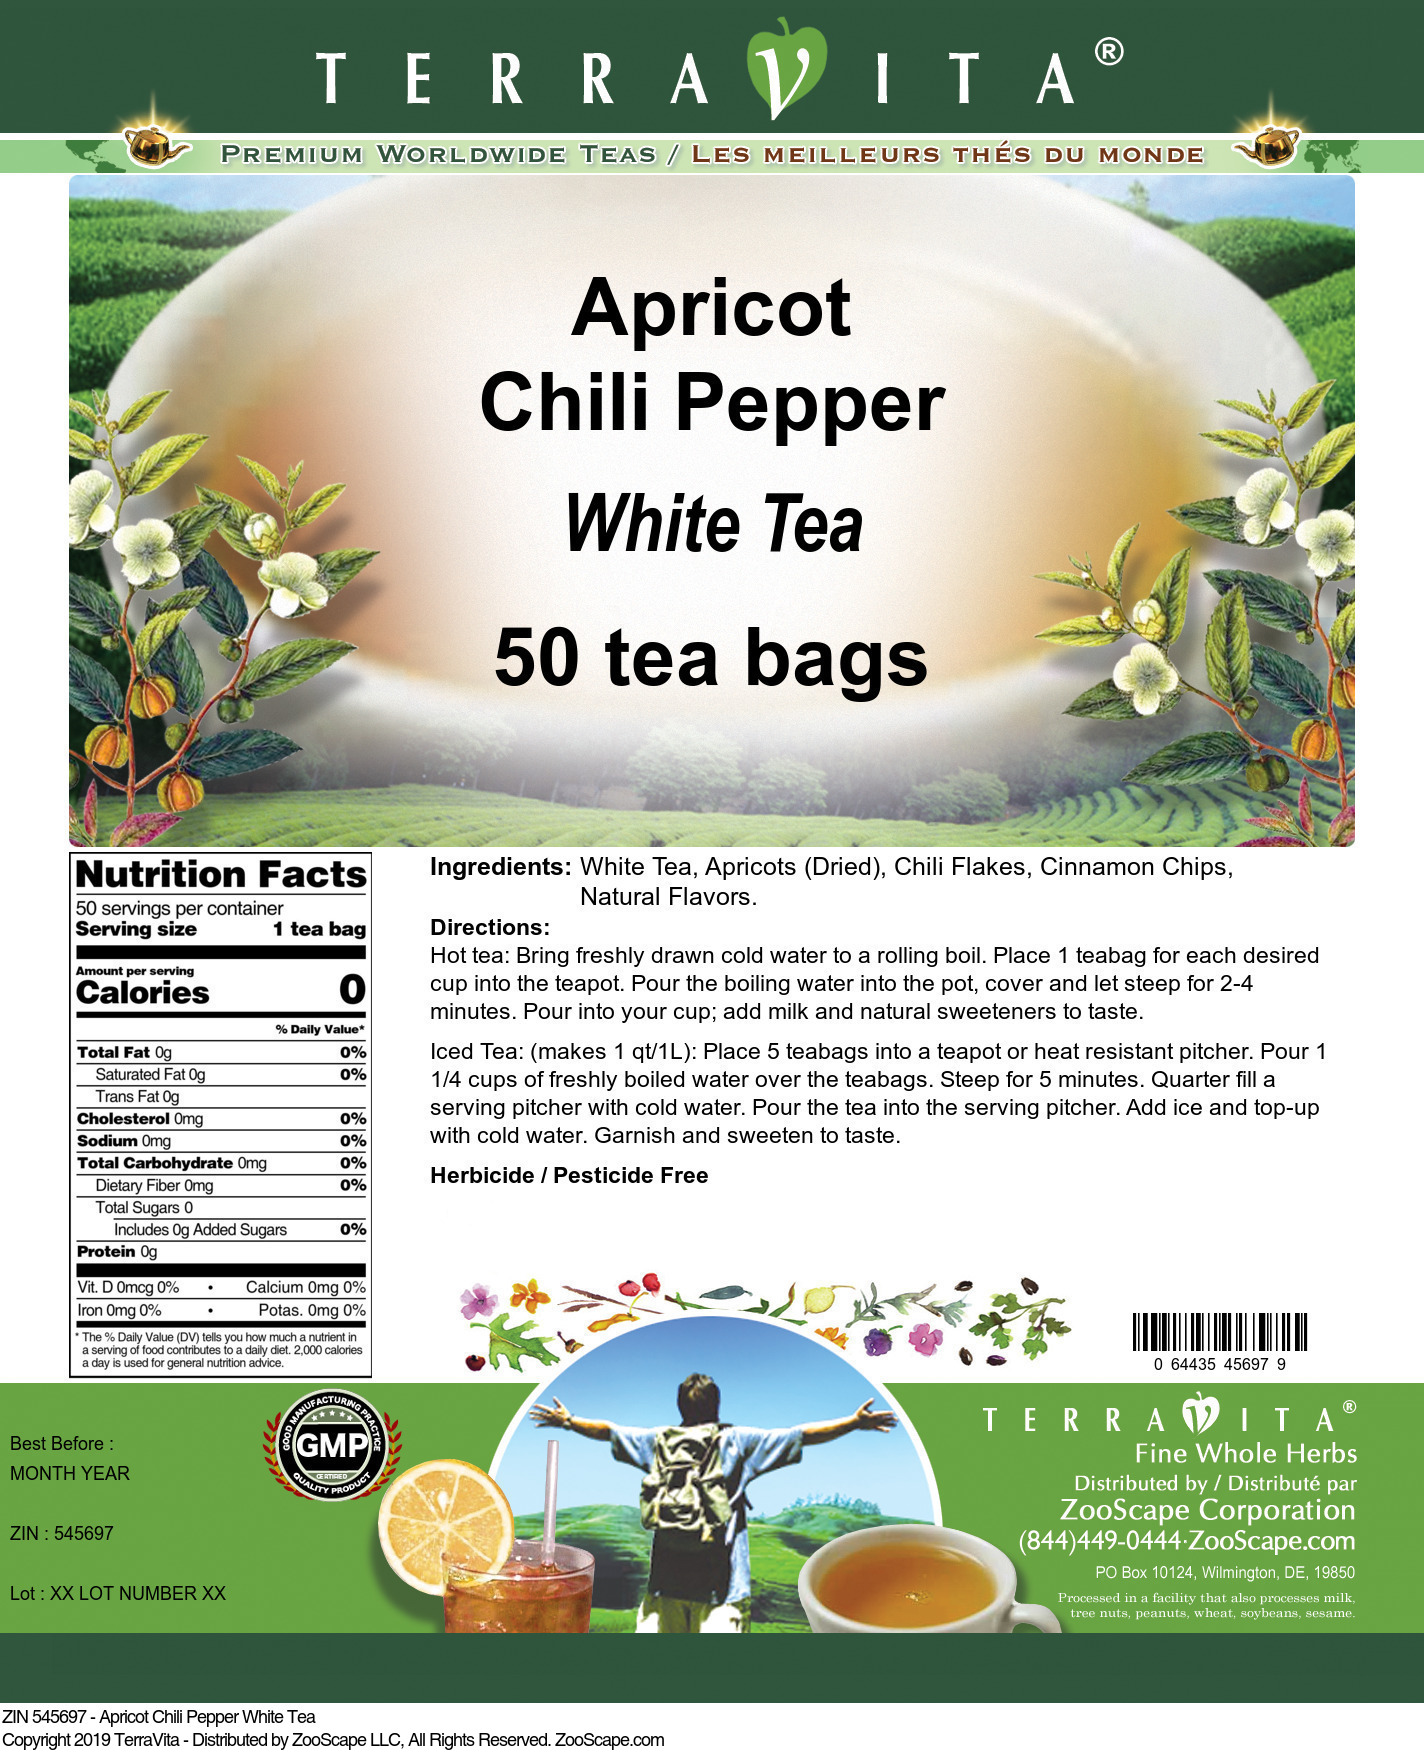 Apricot Chili Pepper White Tea - Label